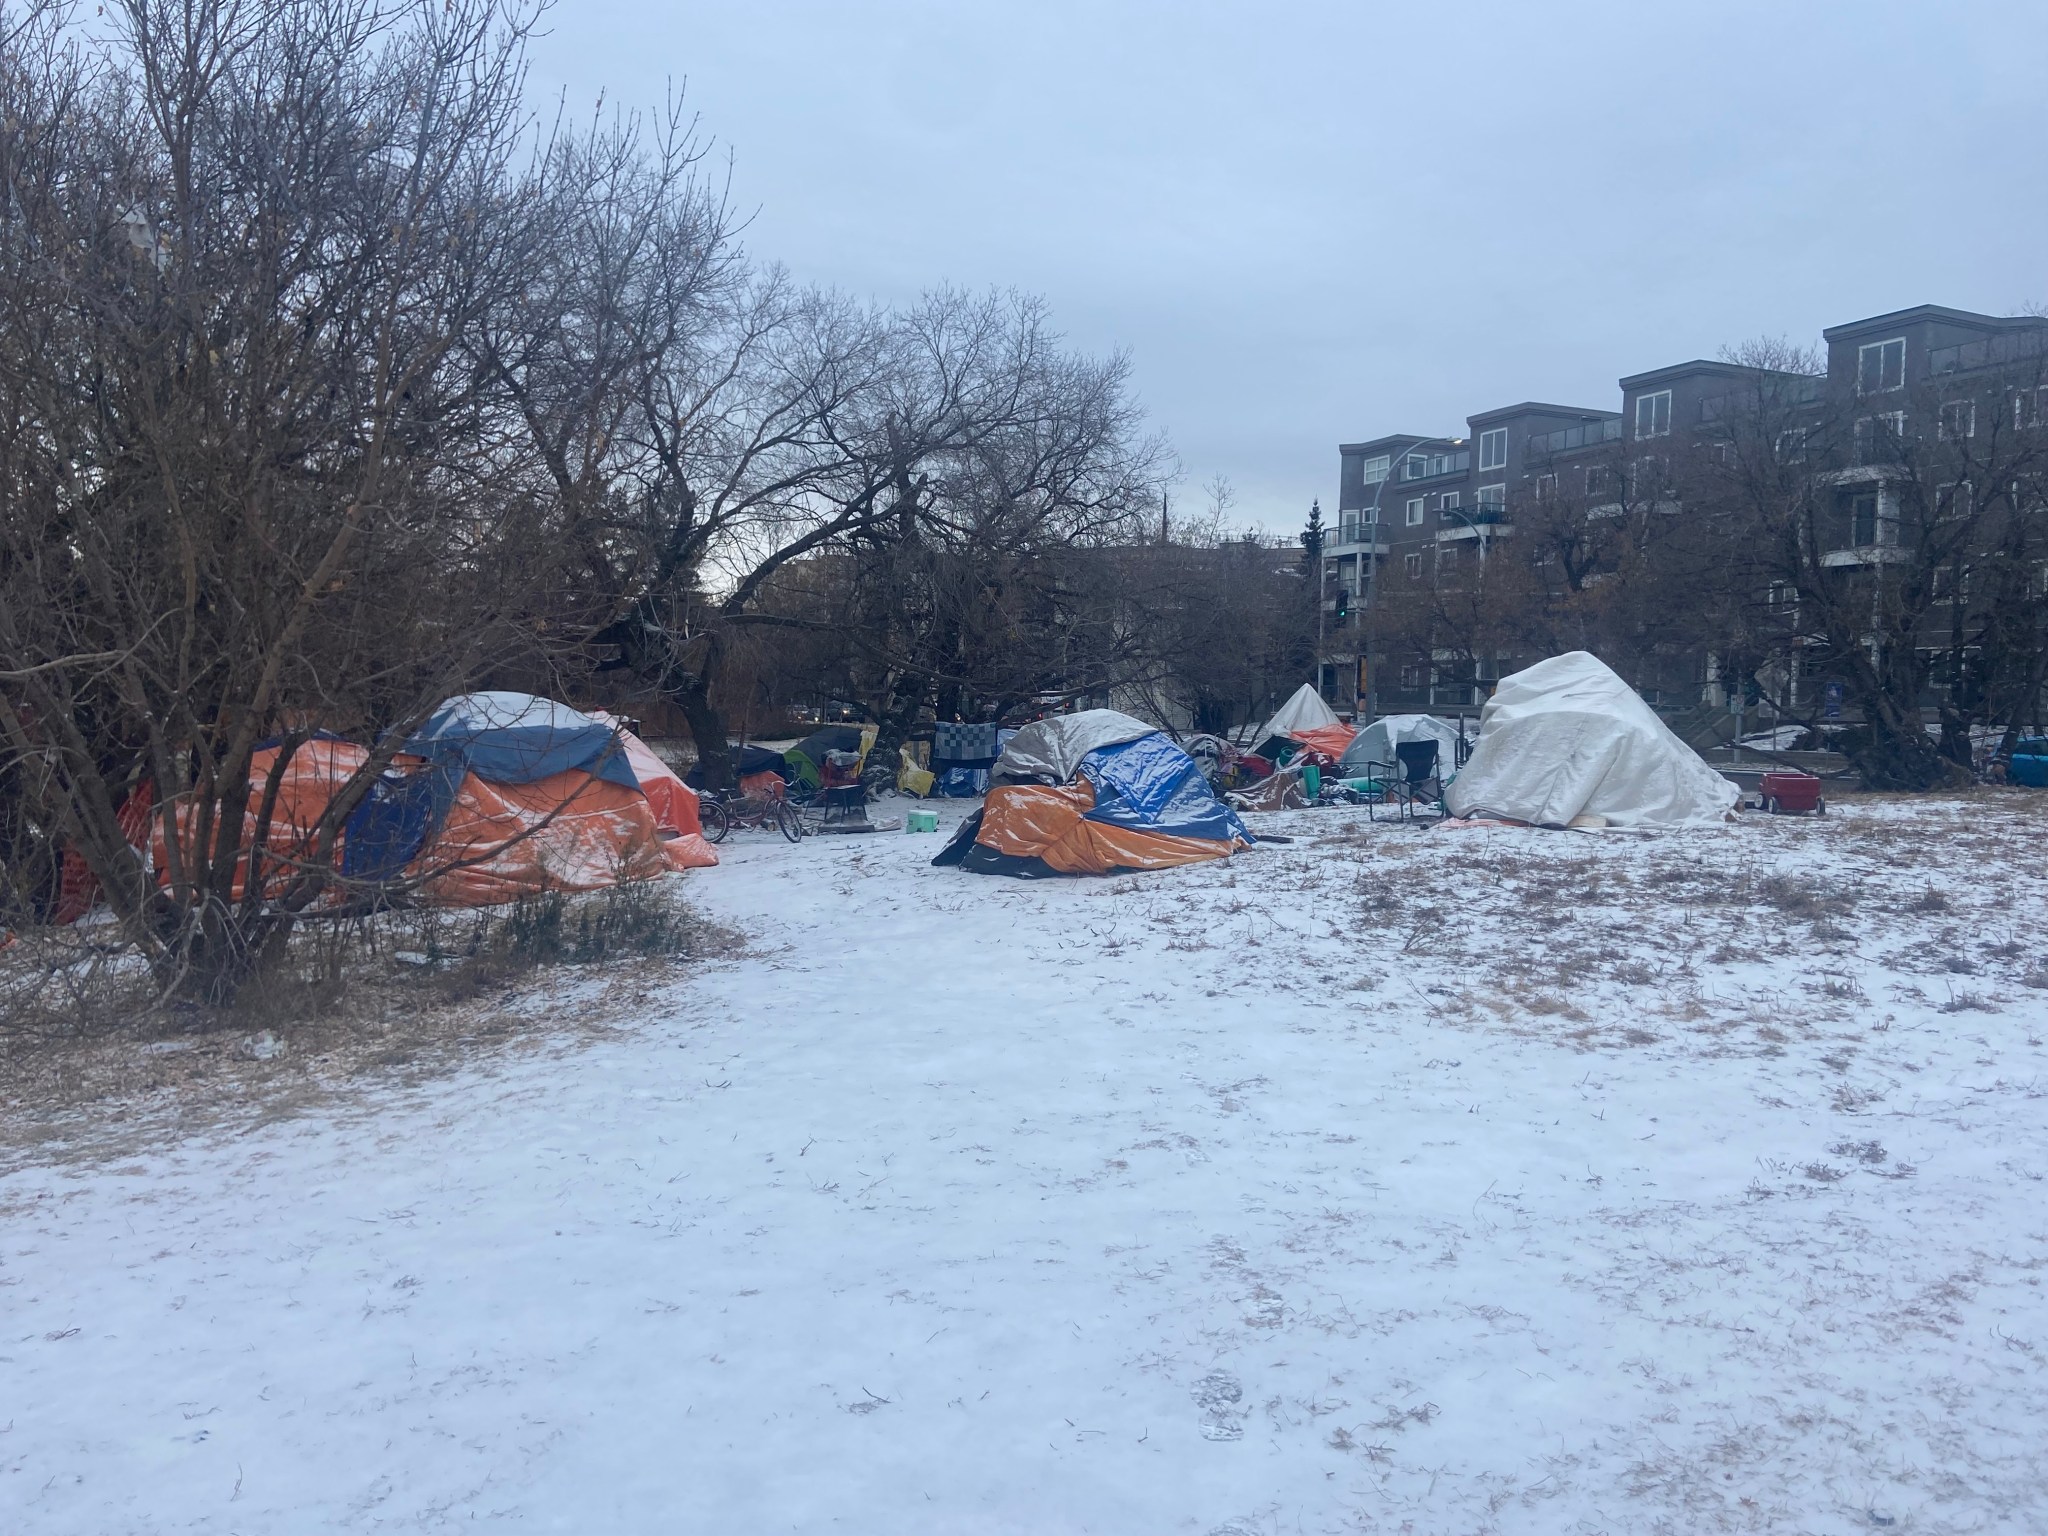 Edmonton homeless encampment.